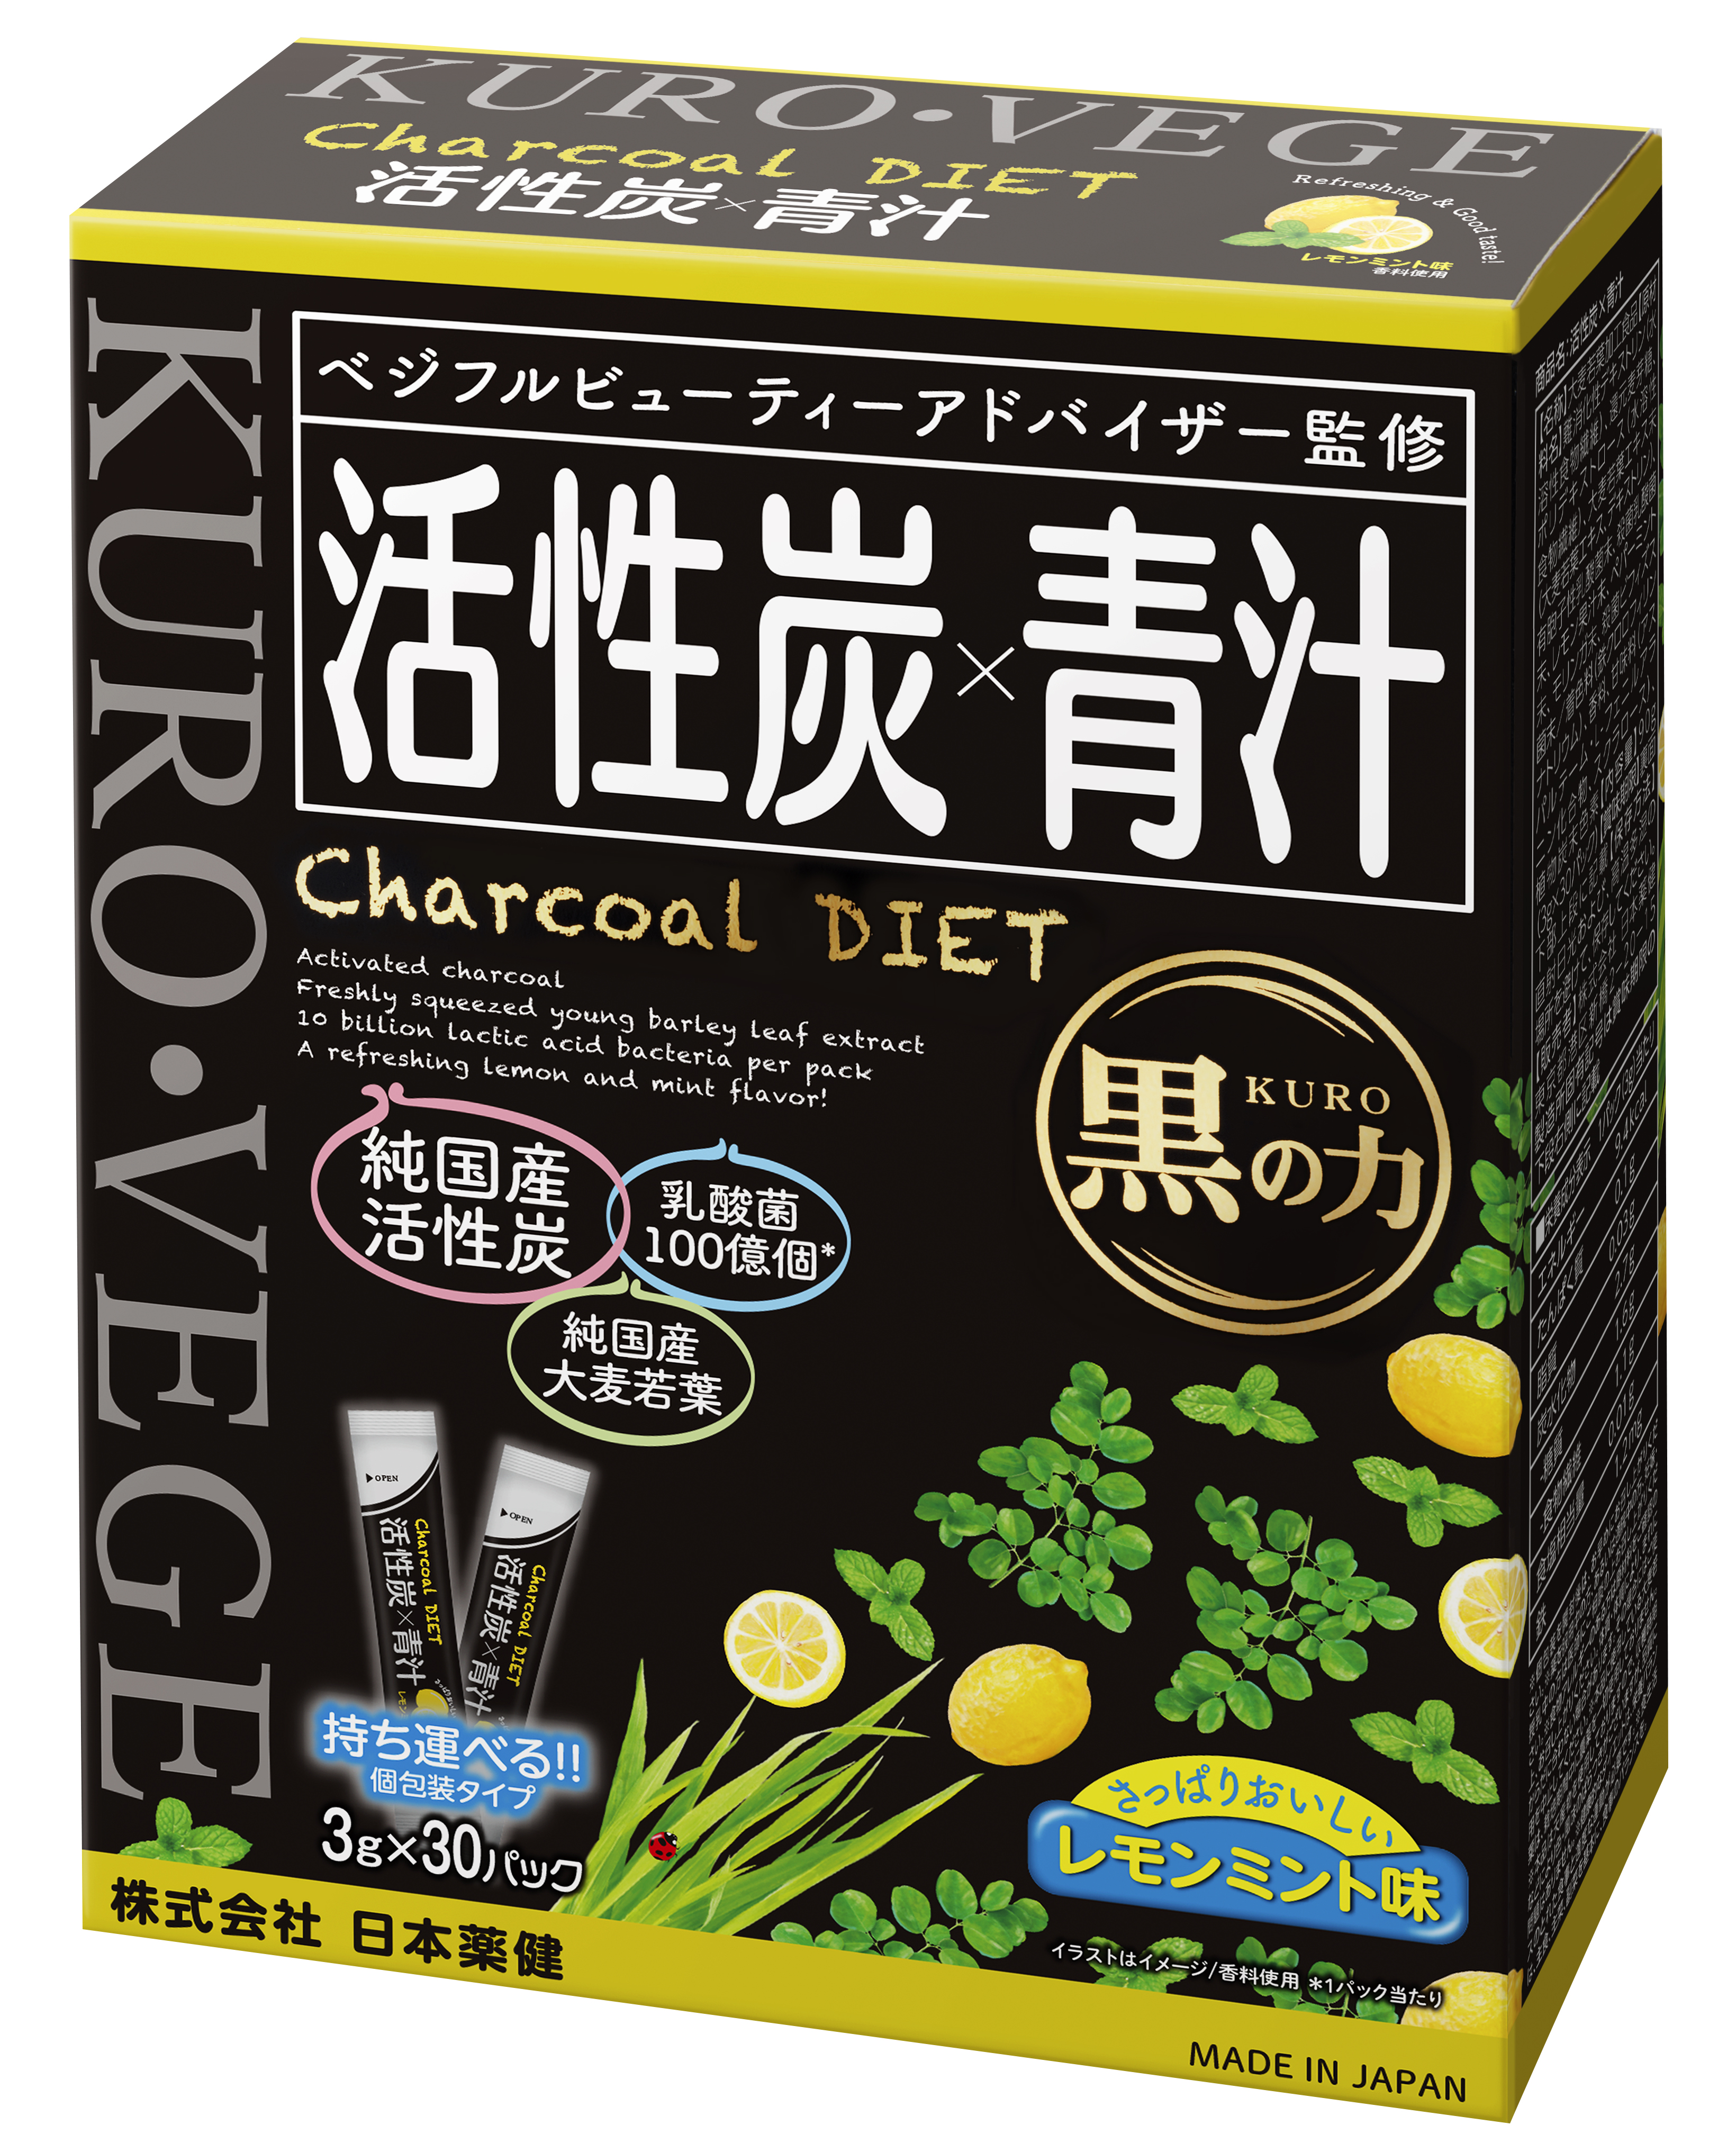 ハリウッドセレブにも人気の最新デトックス法 チャコールクレンズダイエットに最適 活性炭 青汁 が新発売 日本薬健のプレスリリース